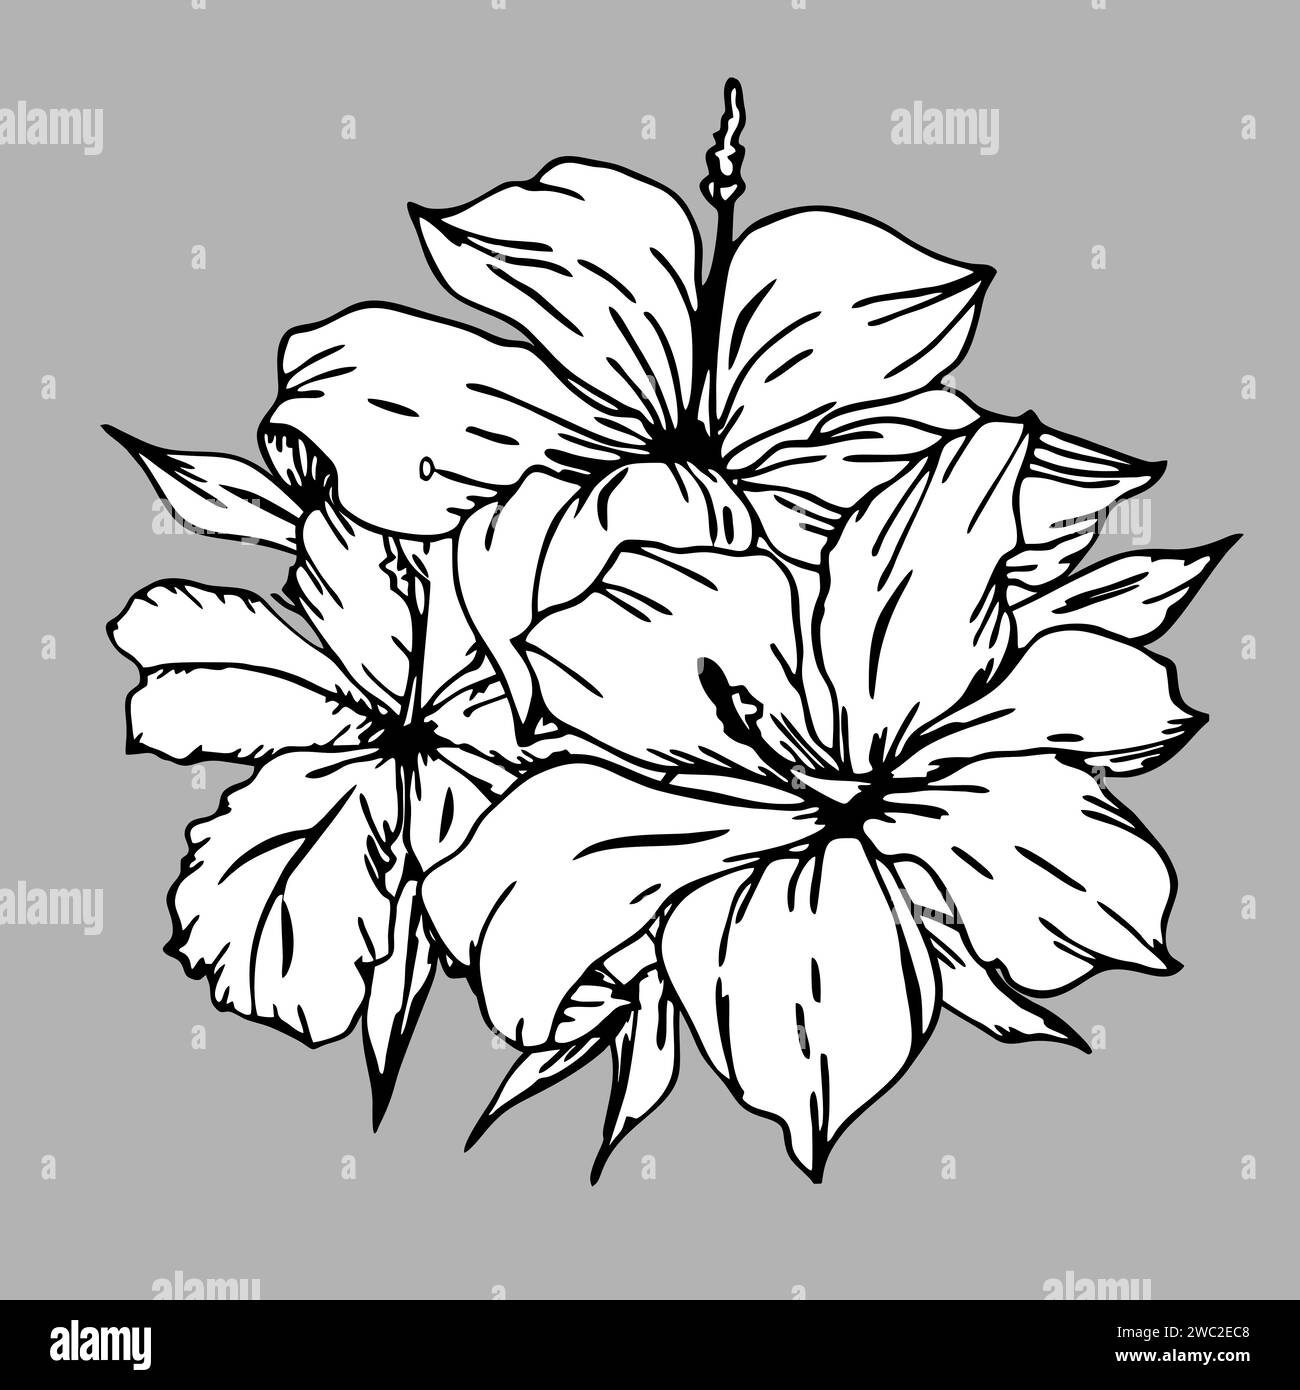 disegno lineare grafico in bianco e nero di un ramo di fiori su sfondo grigio, disegno Foto Stock